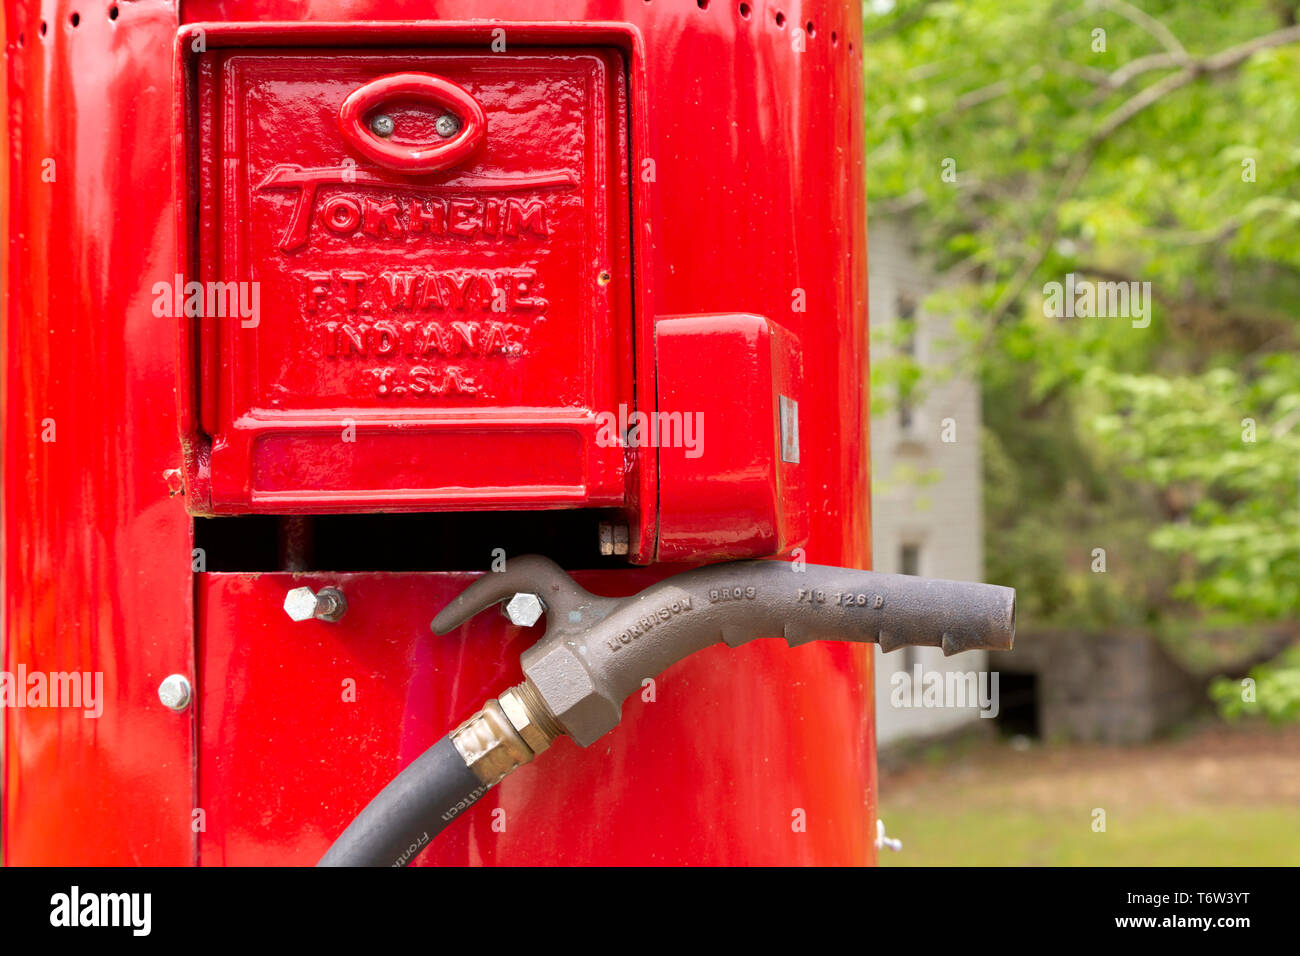 Ein Jahrgang Benzin pumpe in South Carolina, USA. Die Düse hängt von der rote Metall Pumpe. Stockfoto